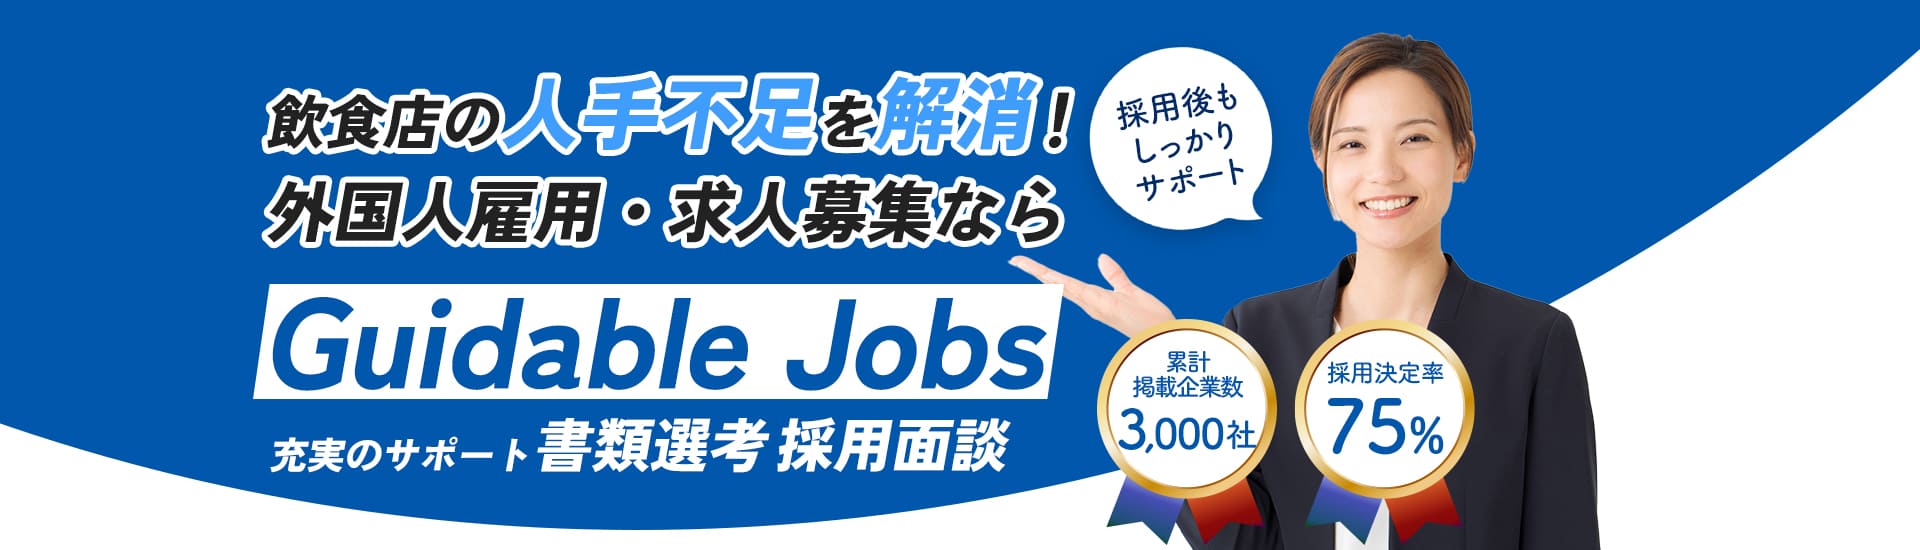 会津若松市の求人・人材募集(正社員・アルバイト・パート・派遣)で外国人の採用をサポート